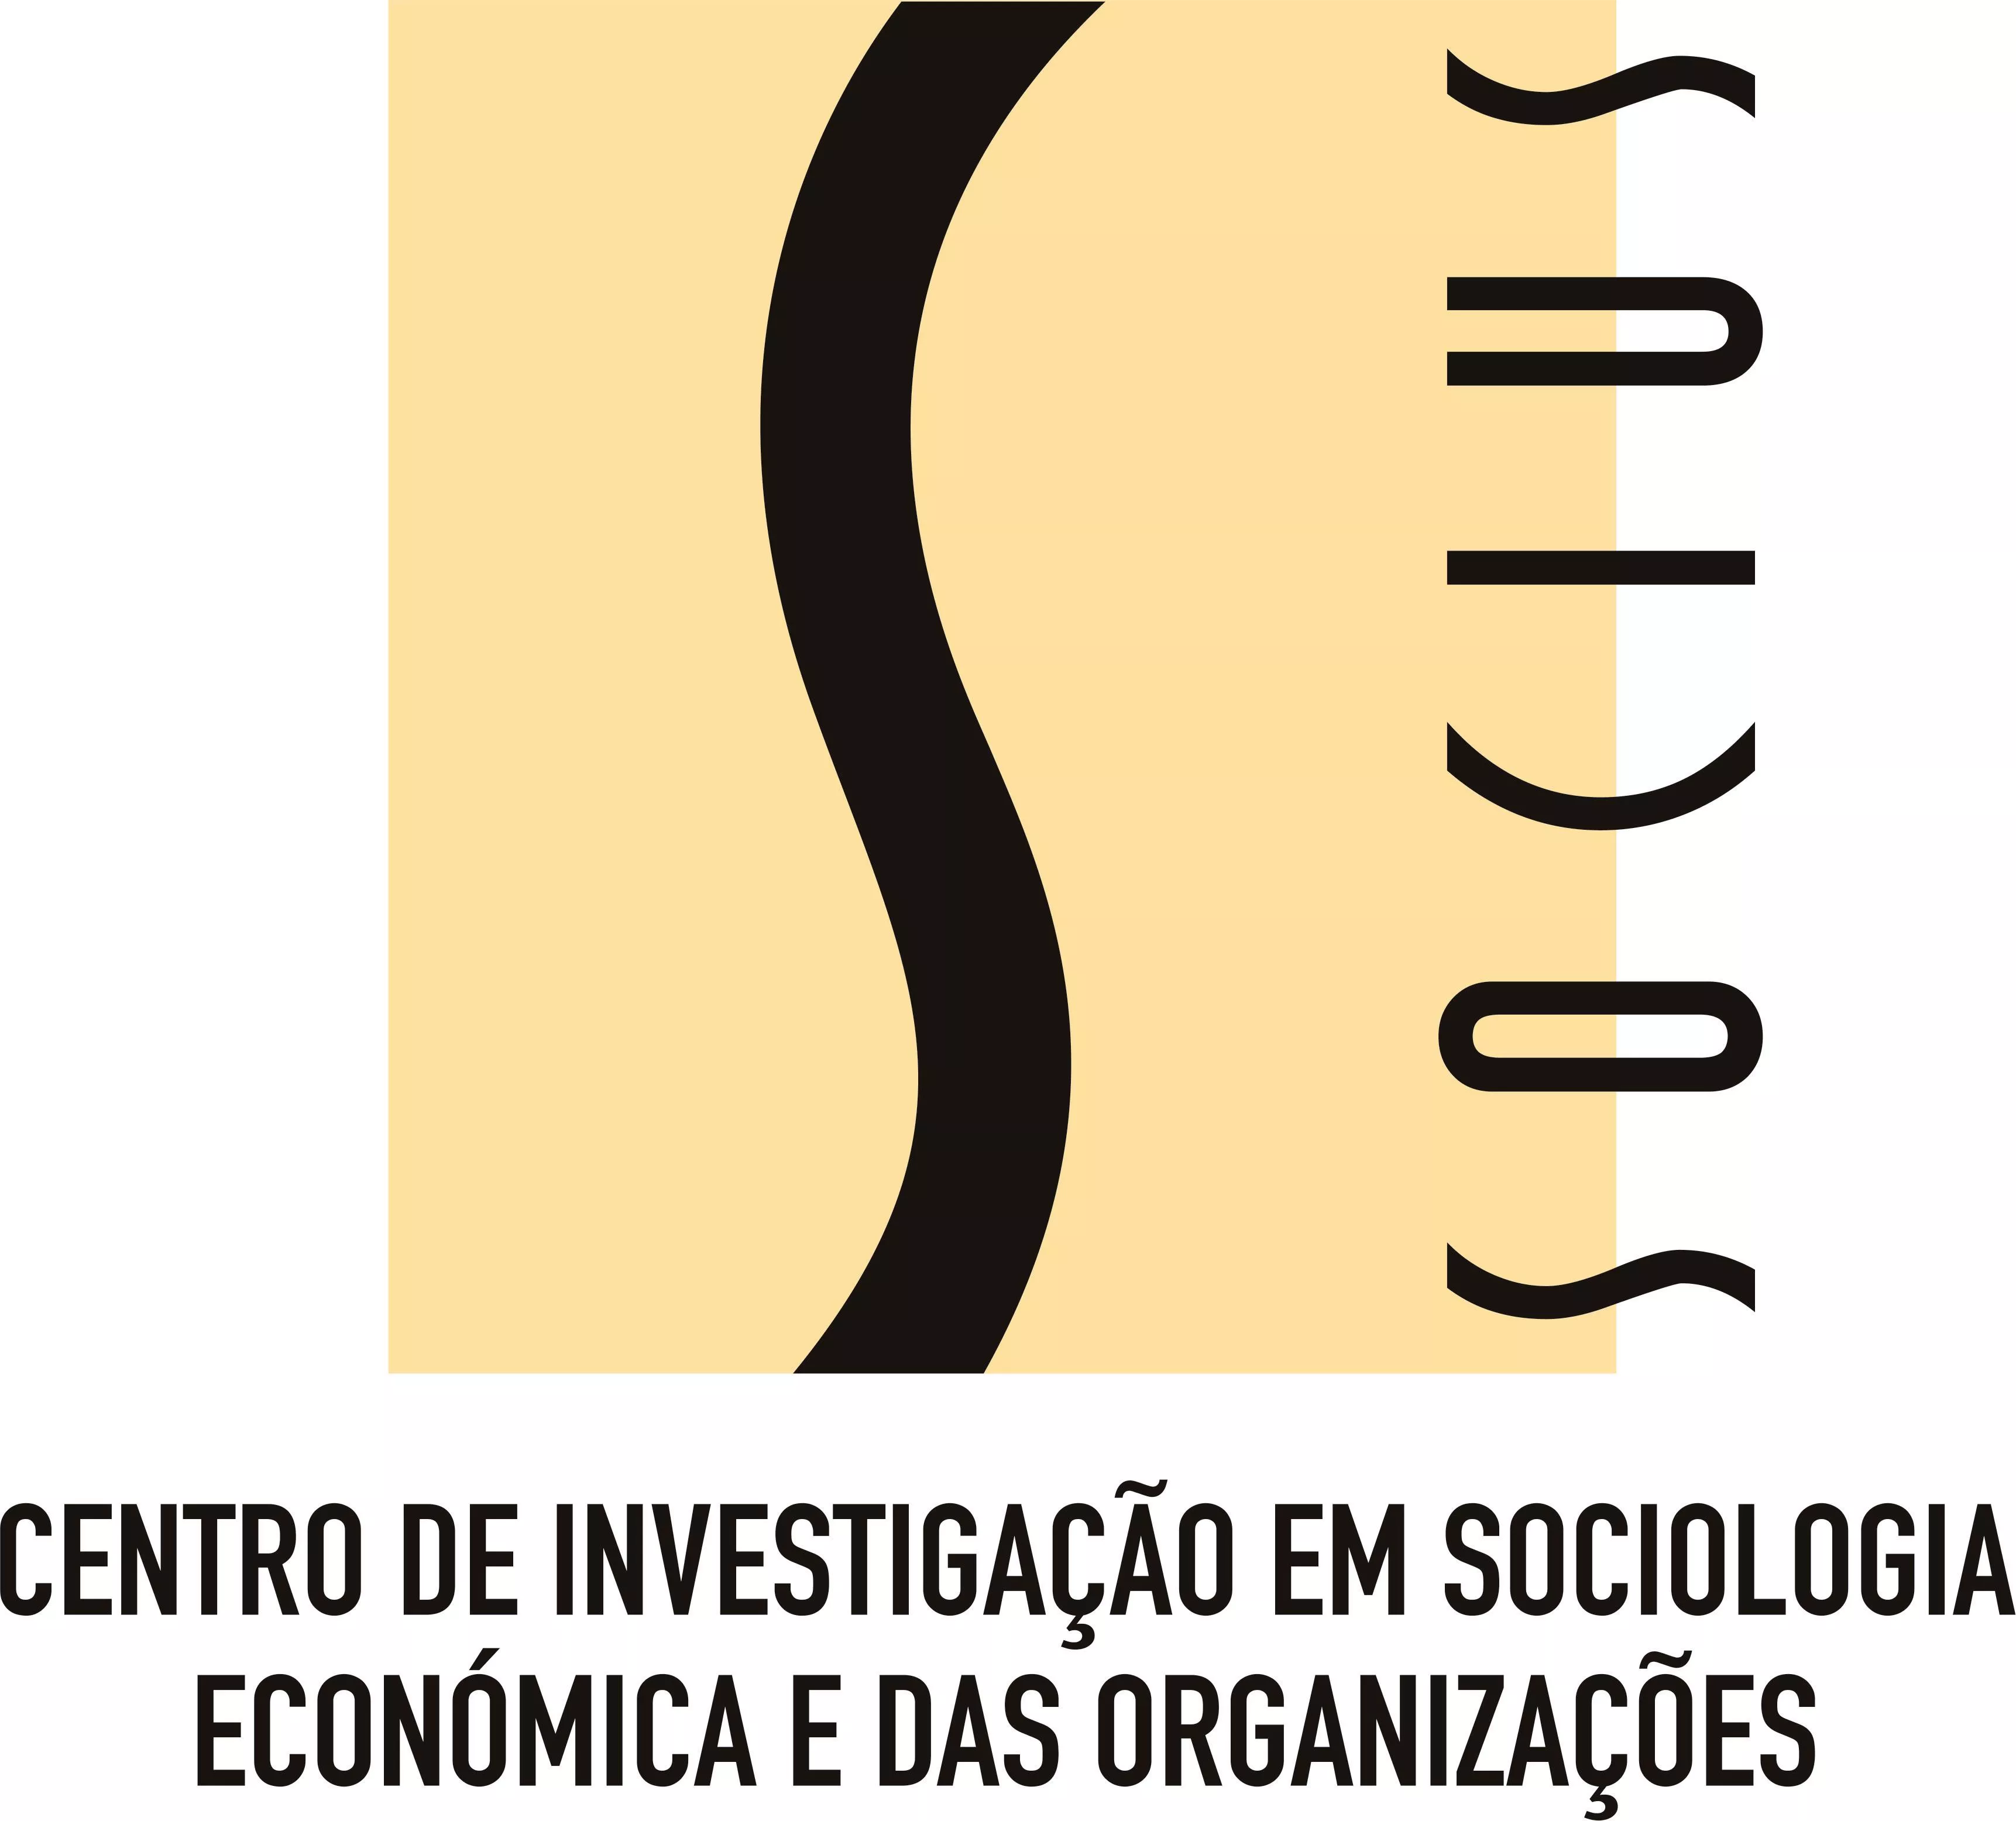 Centro de Investigação em Sociologia Económica e das Organizações (SOCIUS) Instituto Superior de Economia e Gestão (ISEG), Universidade de Lisboa